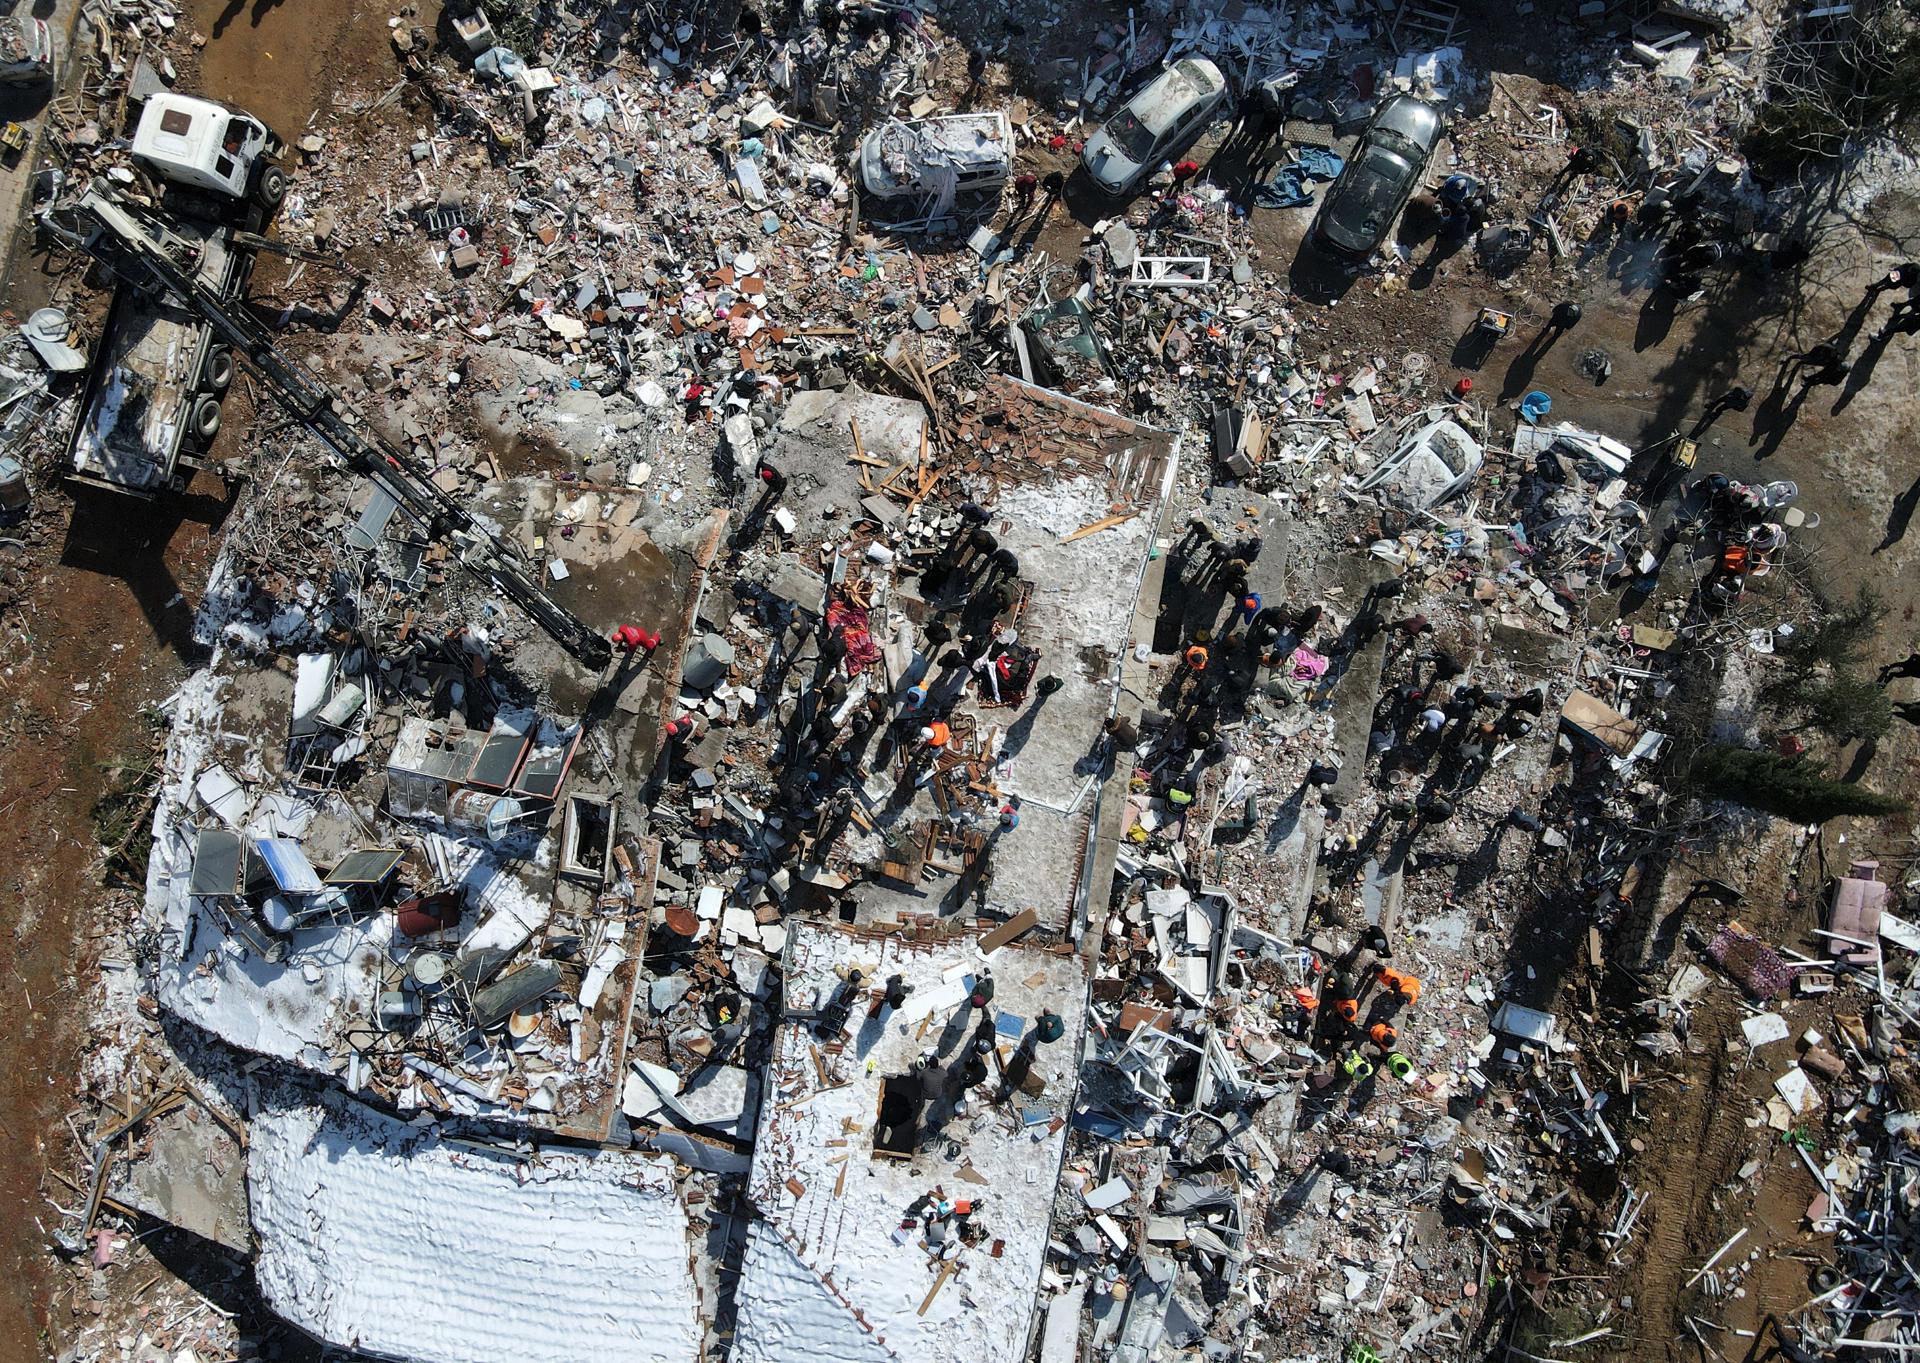 Imagen aérea realizada por un dron de los trabajos de rescate en la zona arrasada de Besni, distrito de Adiyaman, Turquía. EFE/EPA/NECATI SAVAS